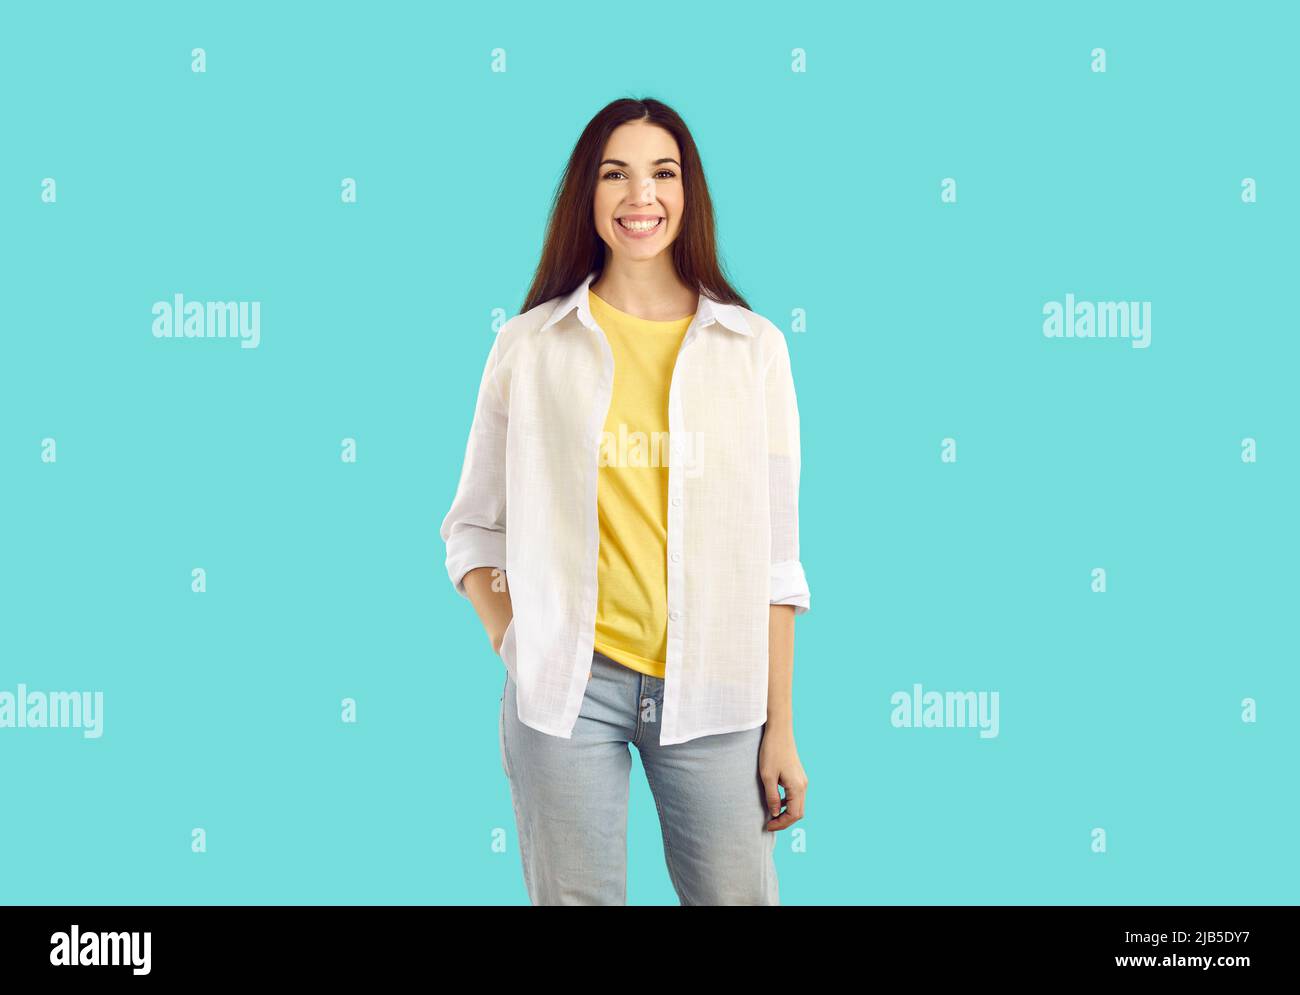 Porträt der jungen freudigen Frau in lässigem Outfit isoliert auf hellblauem Hintergrund. Stockfoto